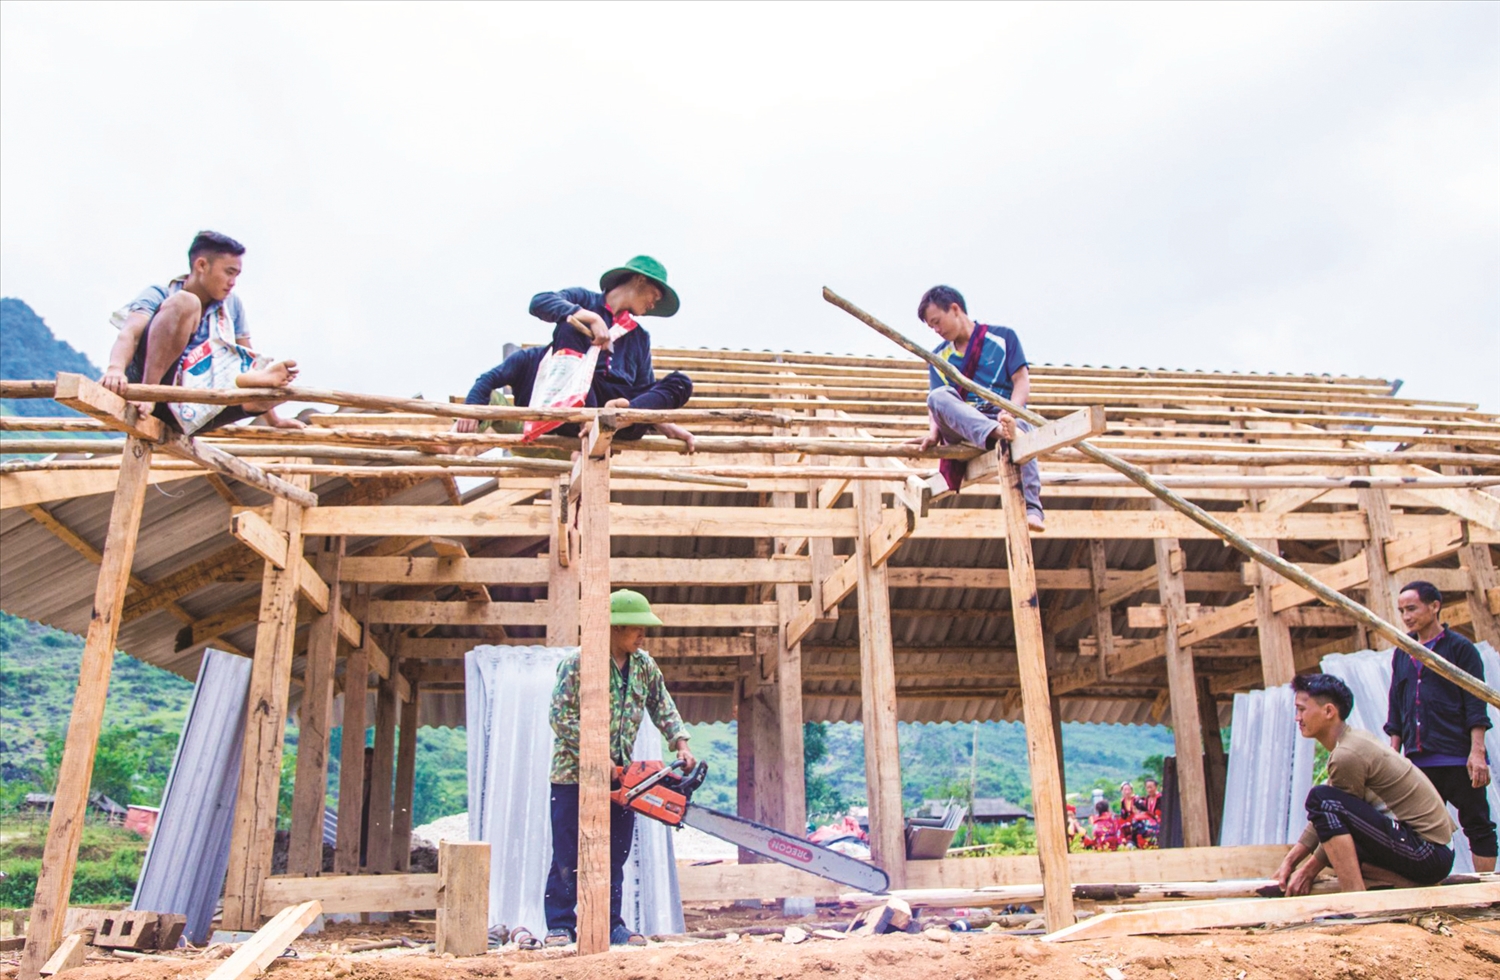 Người dân cùng tham gia góp sức hỗ trợ làm nhà mới cho gia đình chính sách tại huyện Tủa Chùa theo Chương trình “Mái ấm nghĩa tình, an sinh xã hội”.